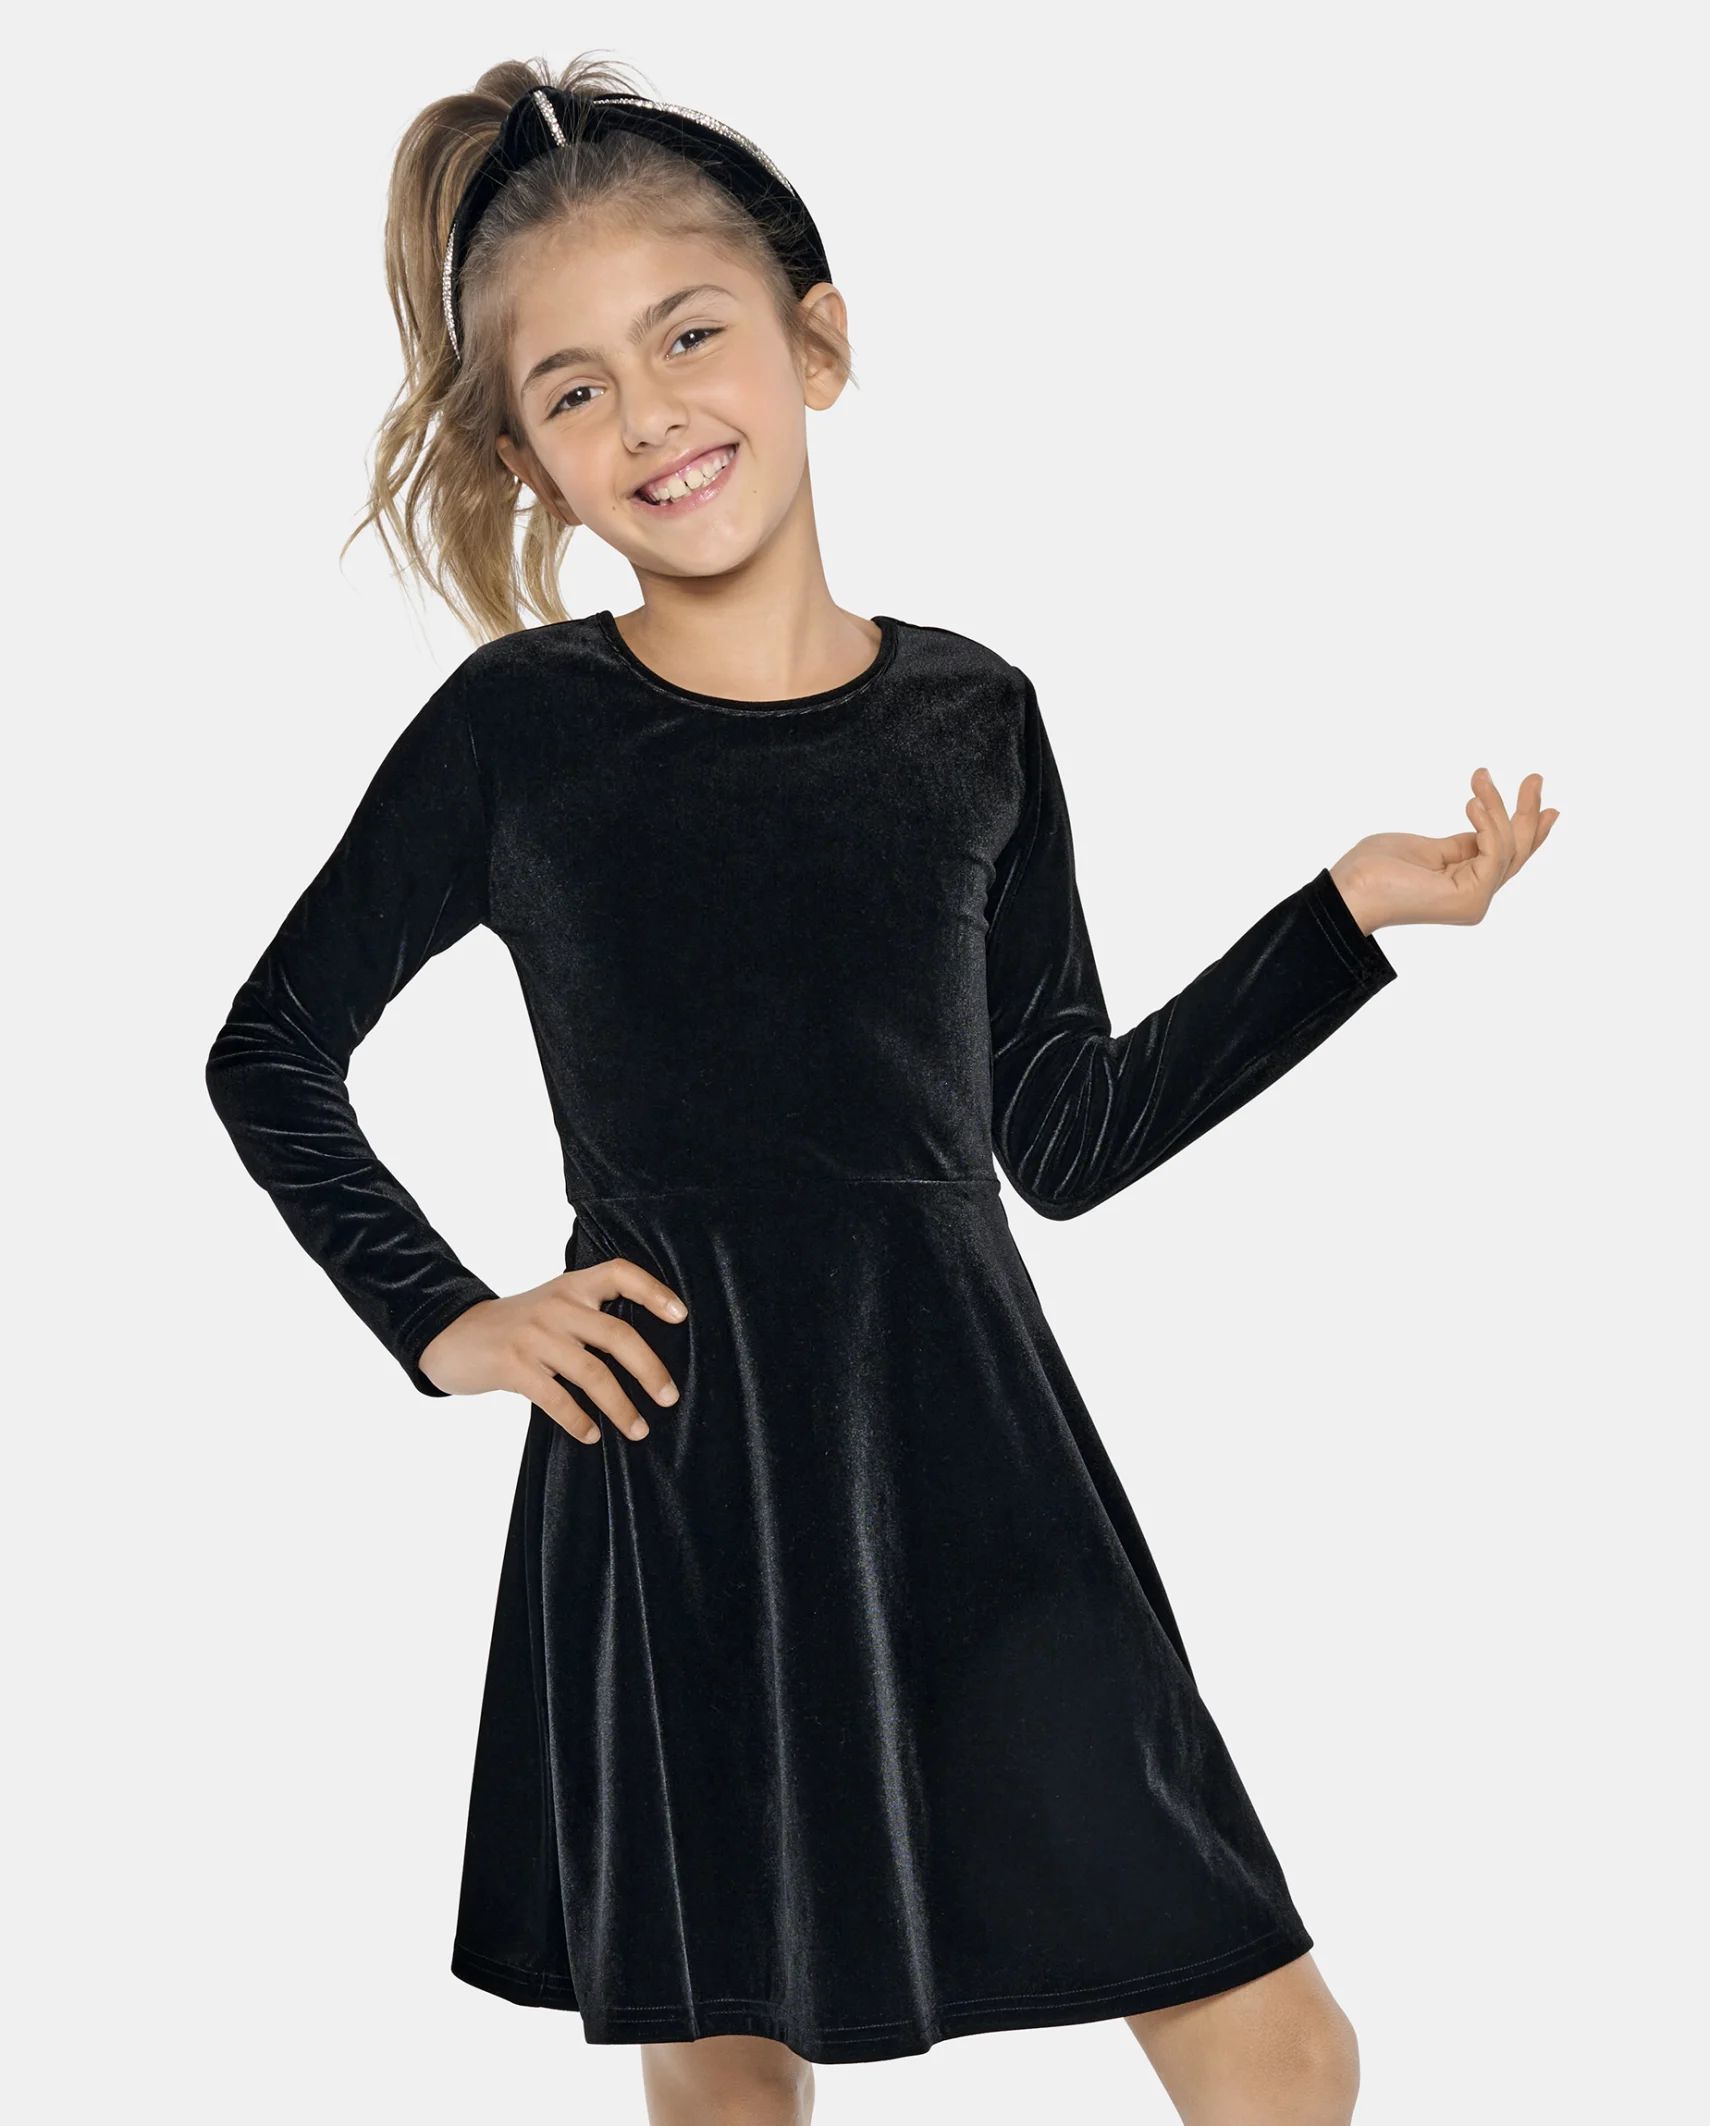 Girls Velour Skater Dress - black | The Children's Place